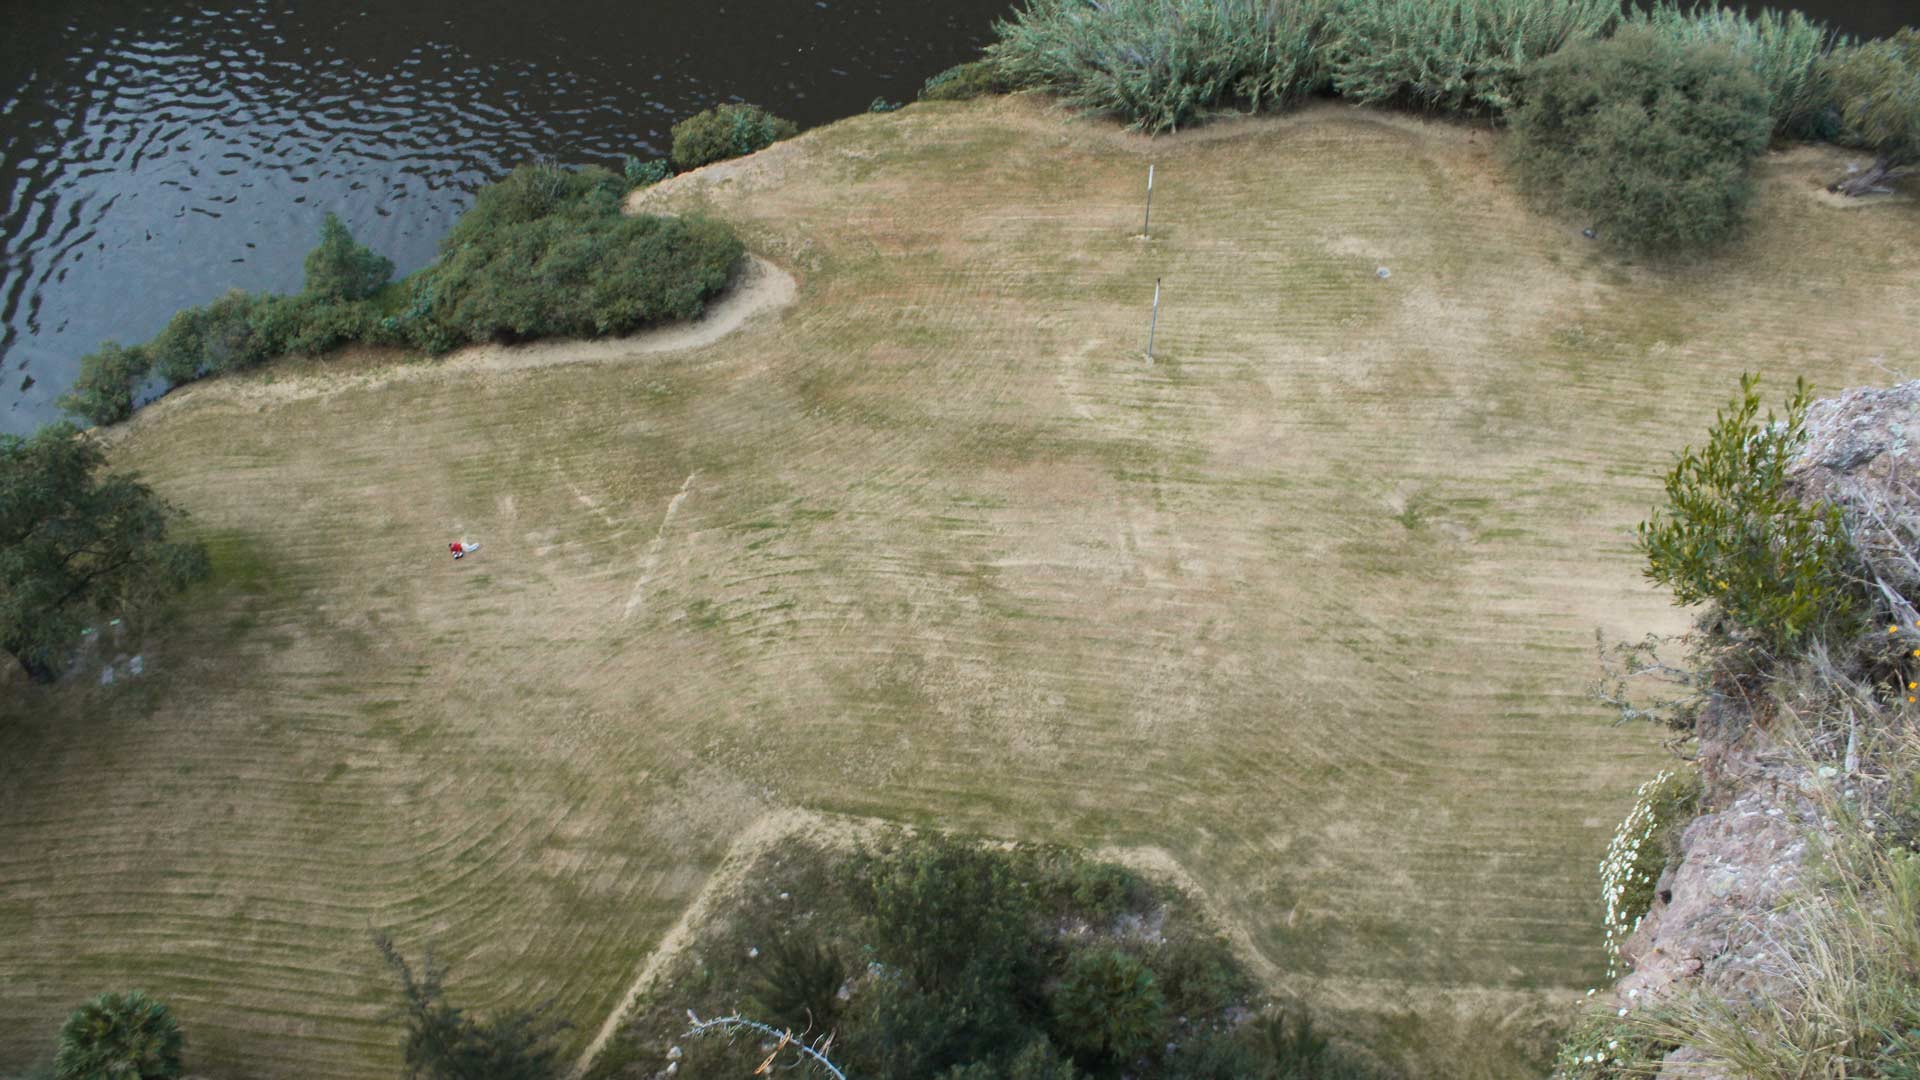 Vista del rappel de 100mts en Parque EcoAlberto